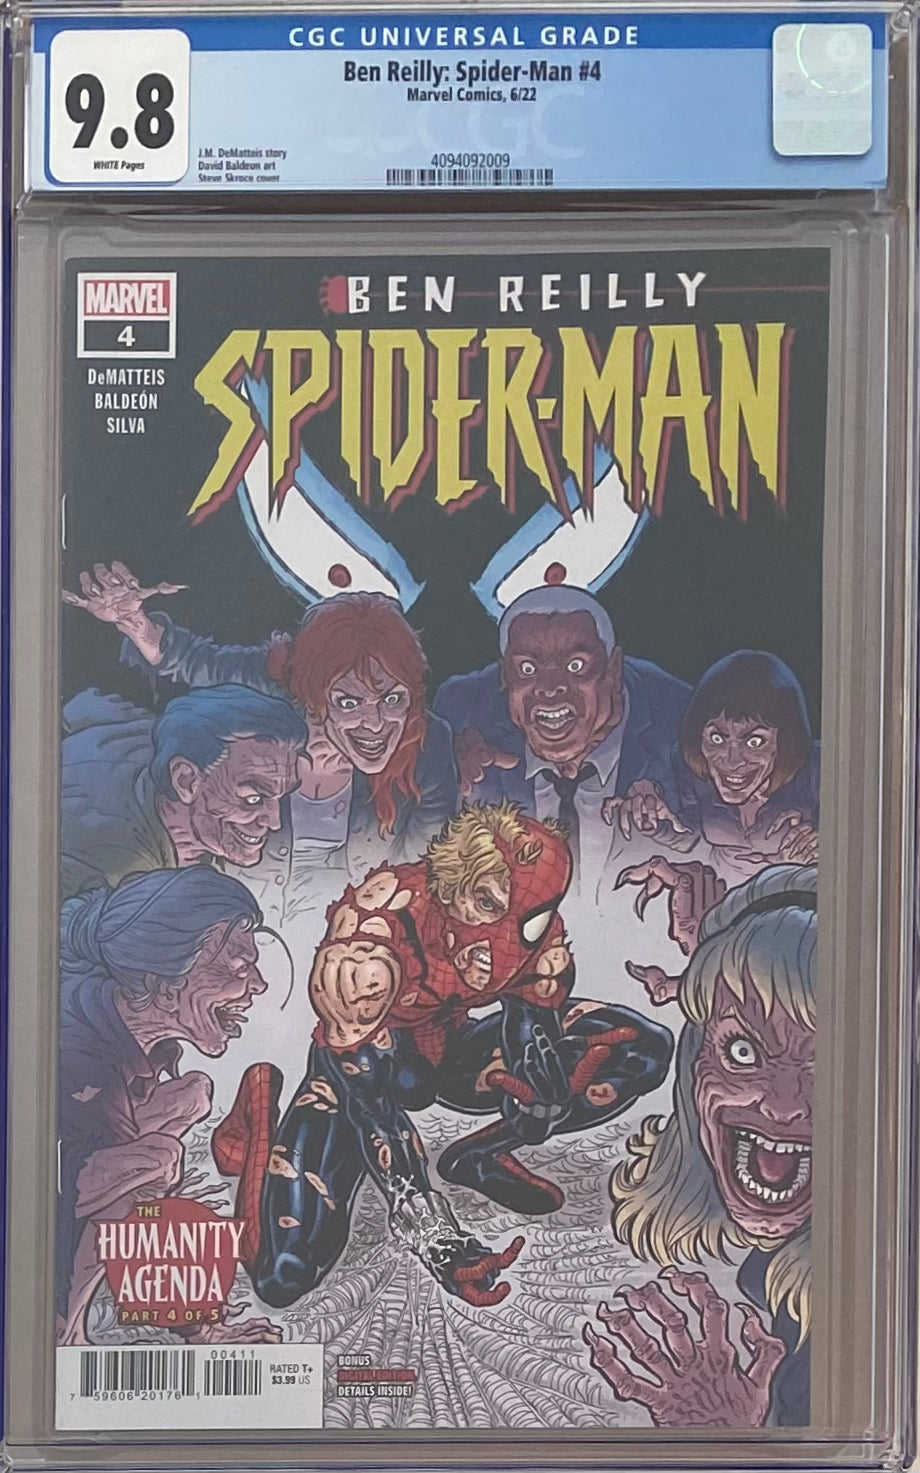 Ben Reilly: Spider-Man #4 CGC 9.8